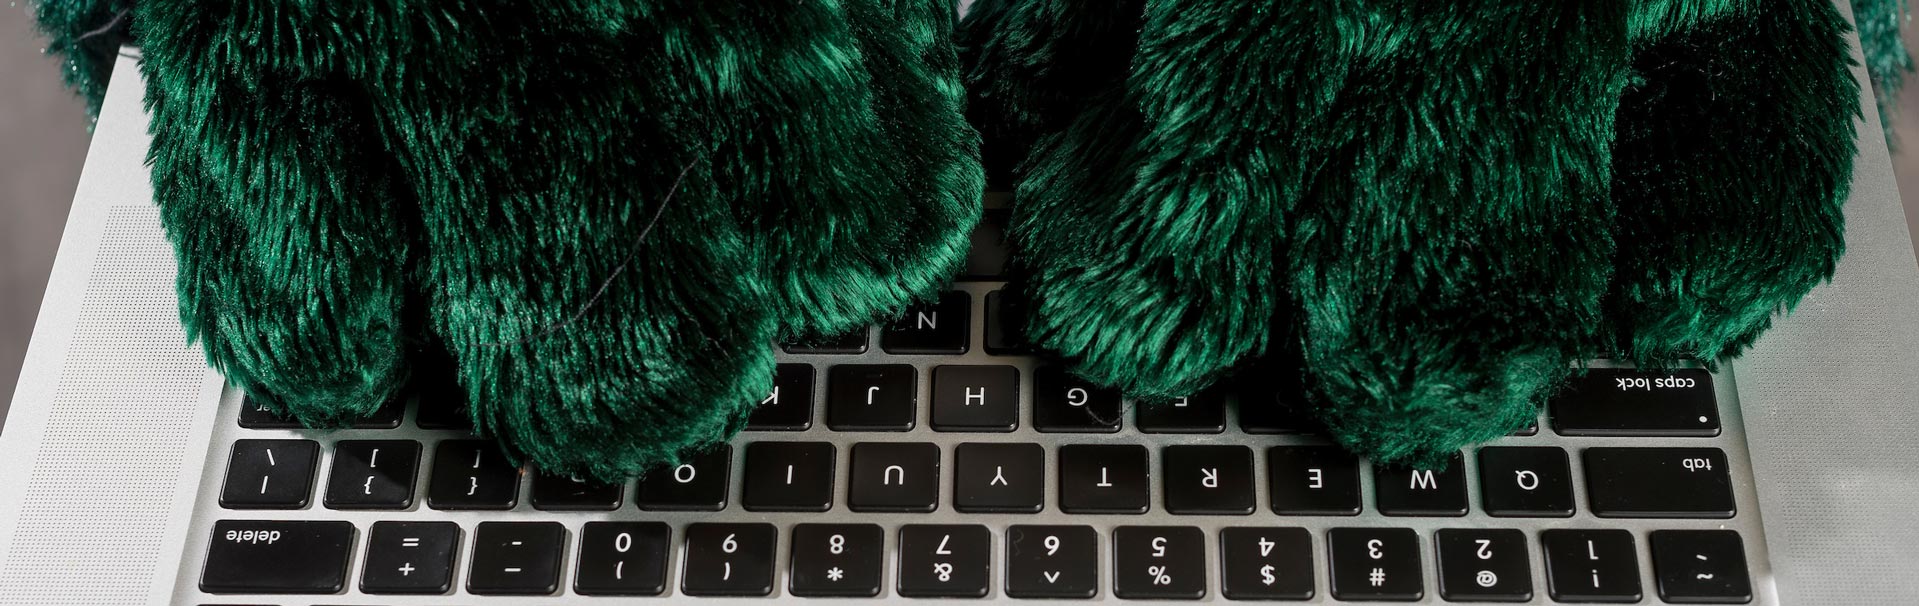 sammy seahawk's hands type on a laptop keyboard.